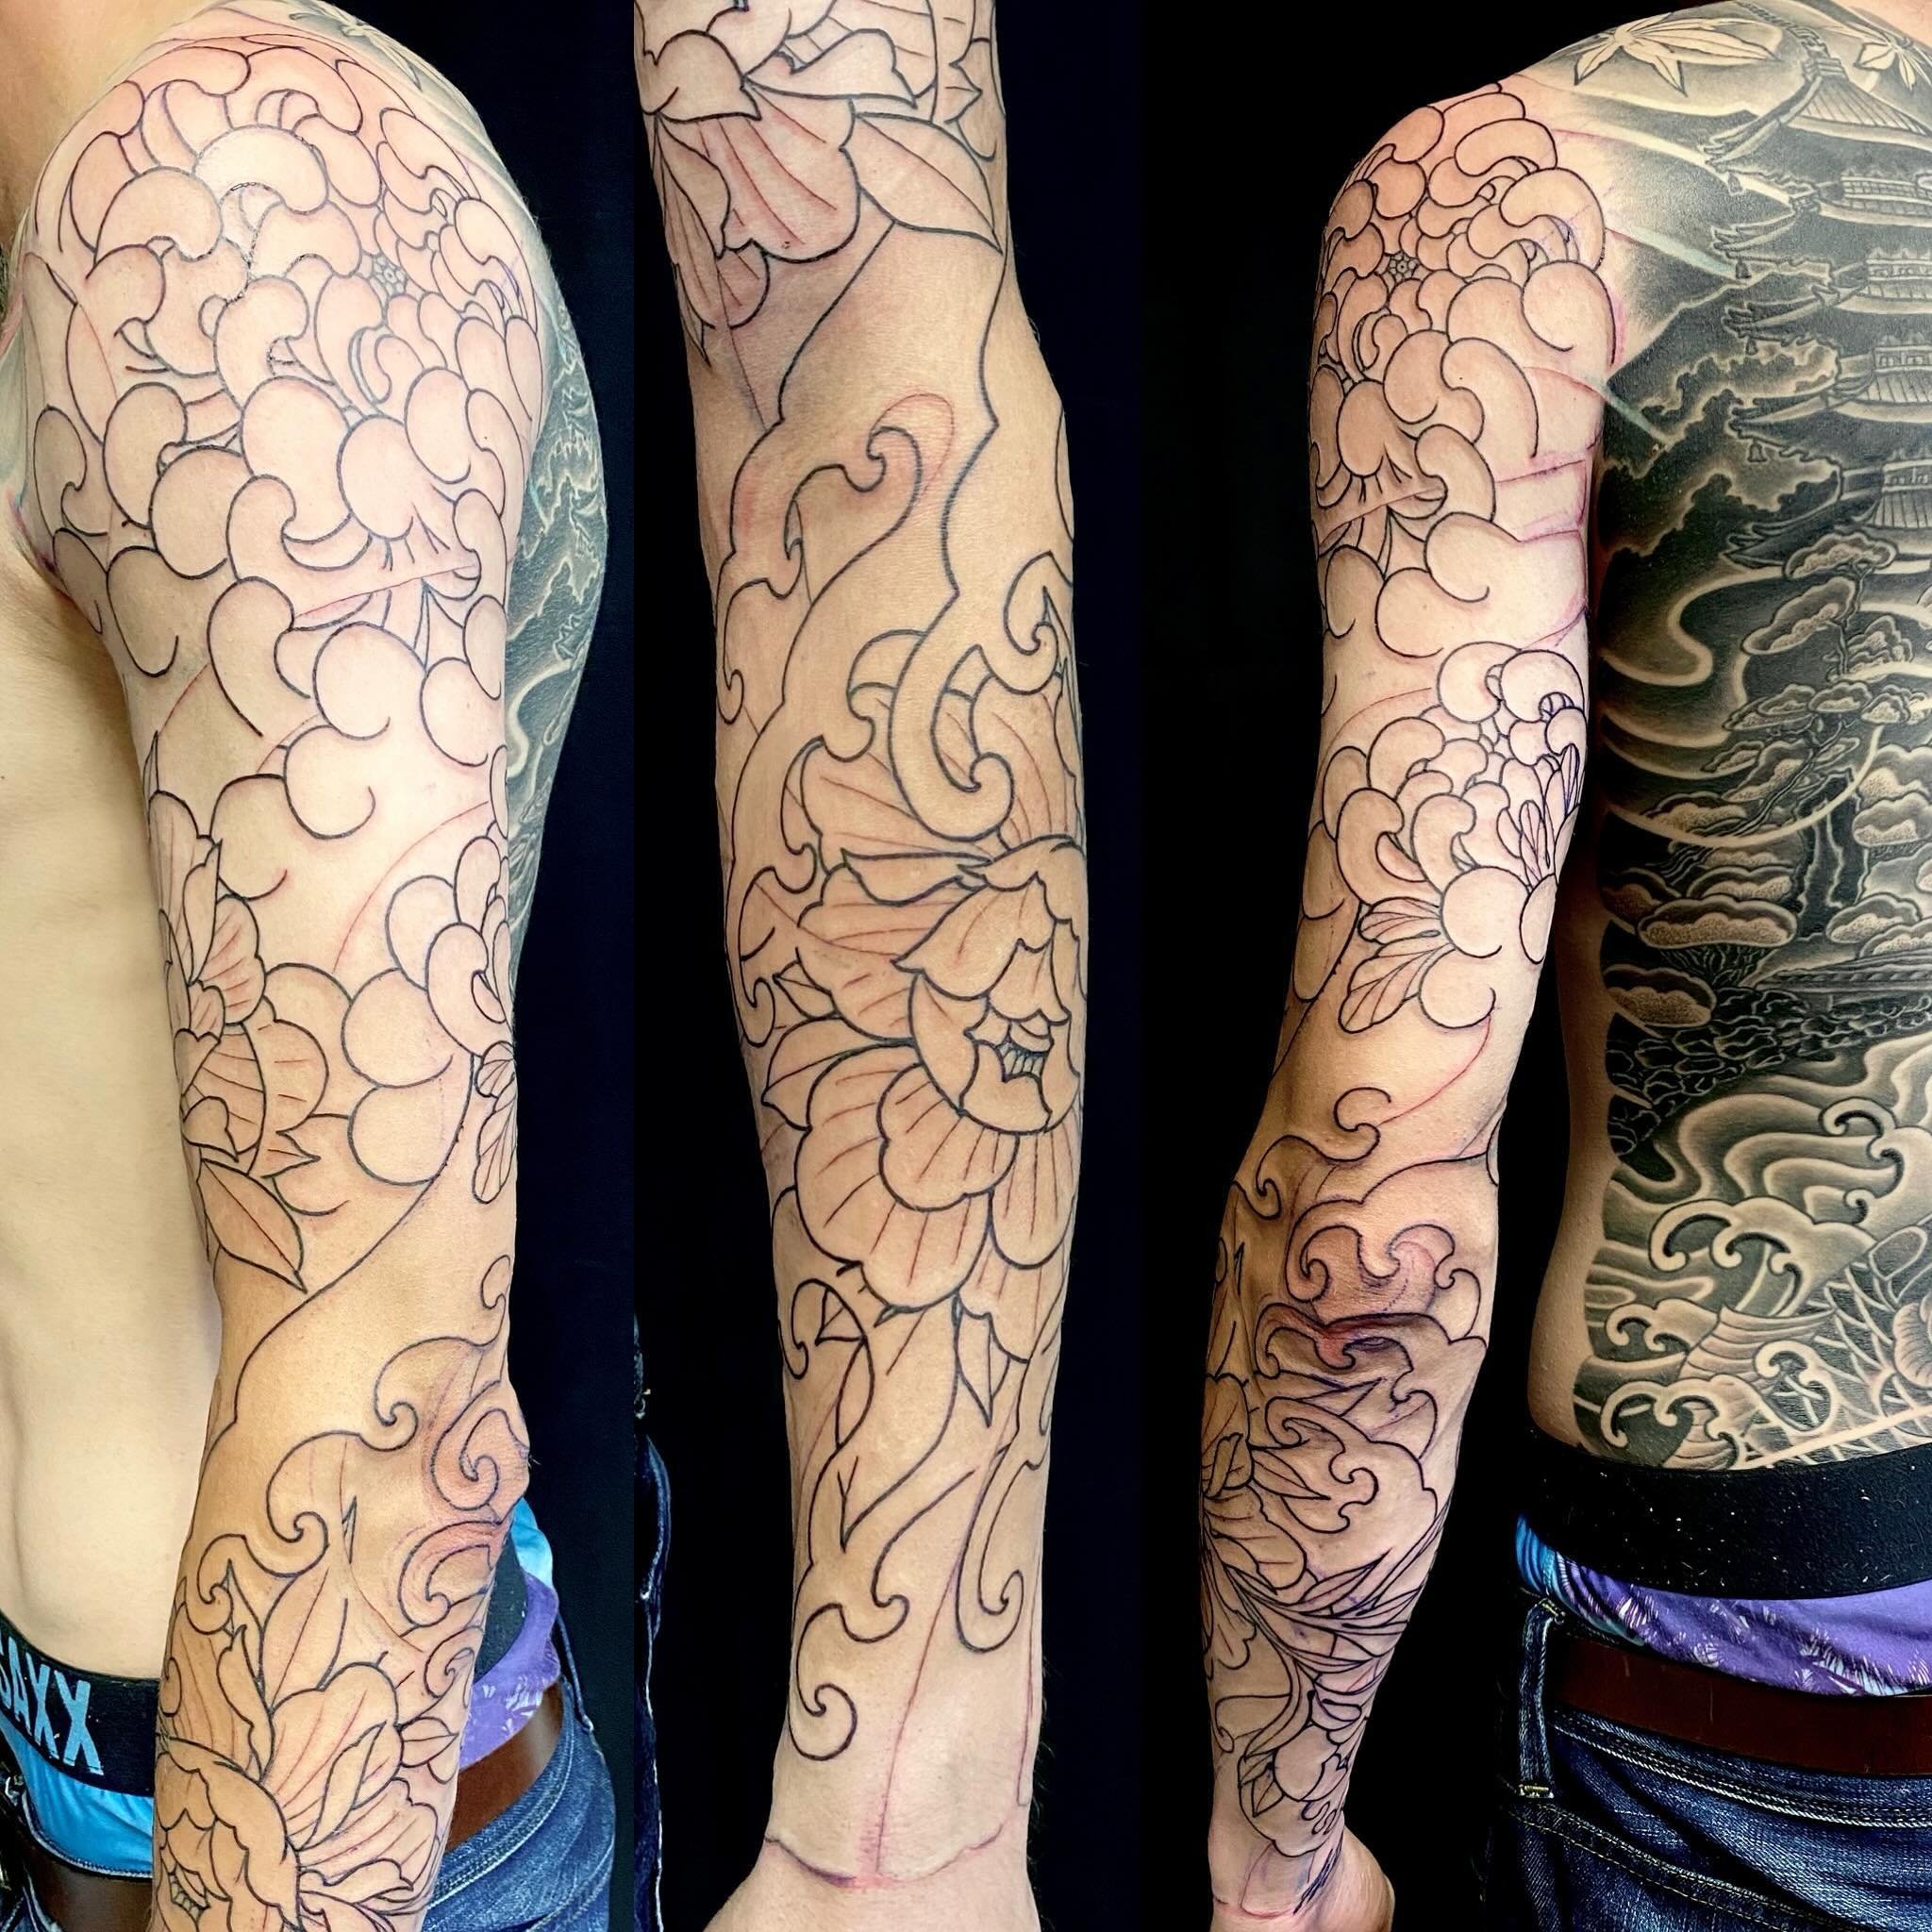 Backpiece almost finished, why not start the arm next? 
.
.
.
.
.
.
.
.

#tattoo #tattoos #tattooed #tattooartist #cohenfloch  #victoriatattoo #yyjtattoo #vanisletattoo  #vancouvertattoo #tattoodo  #inked #刺青 #tattooworkers #tattoolife